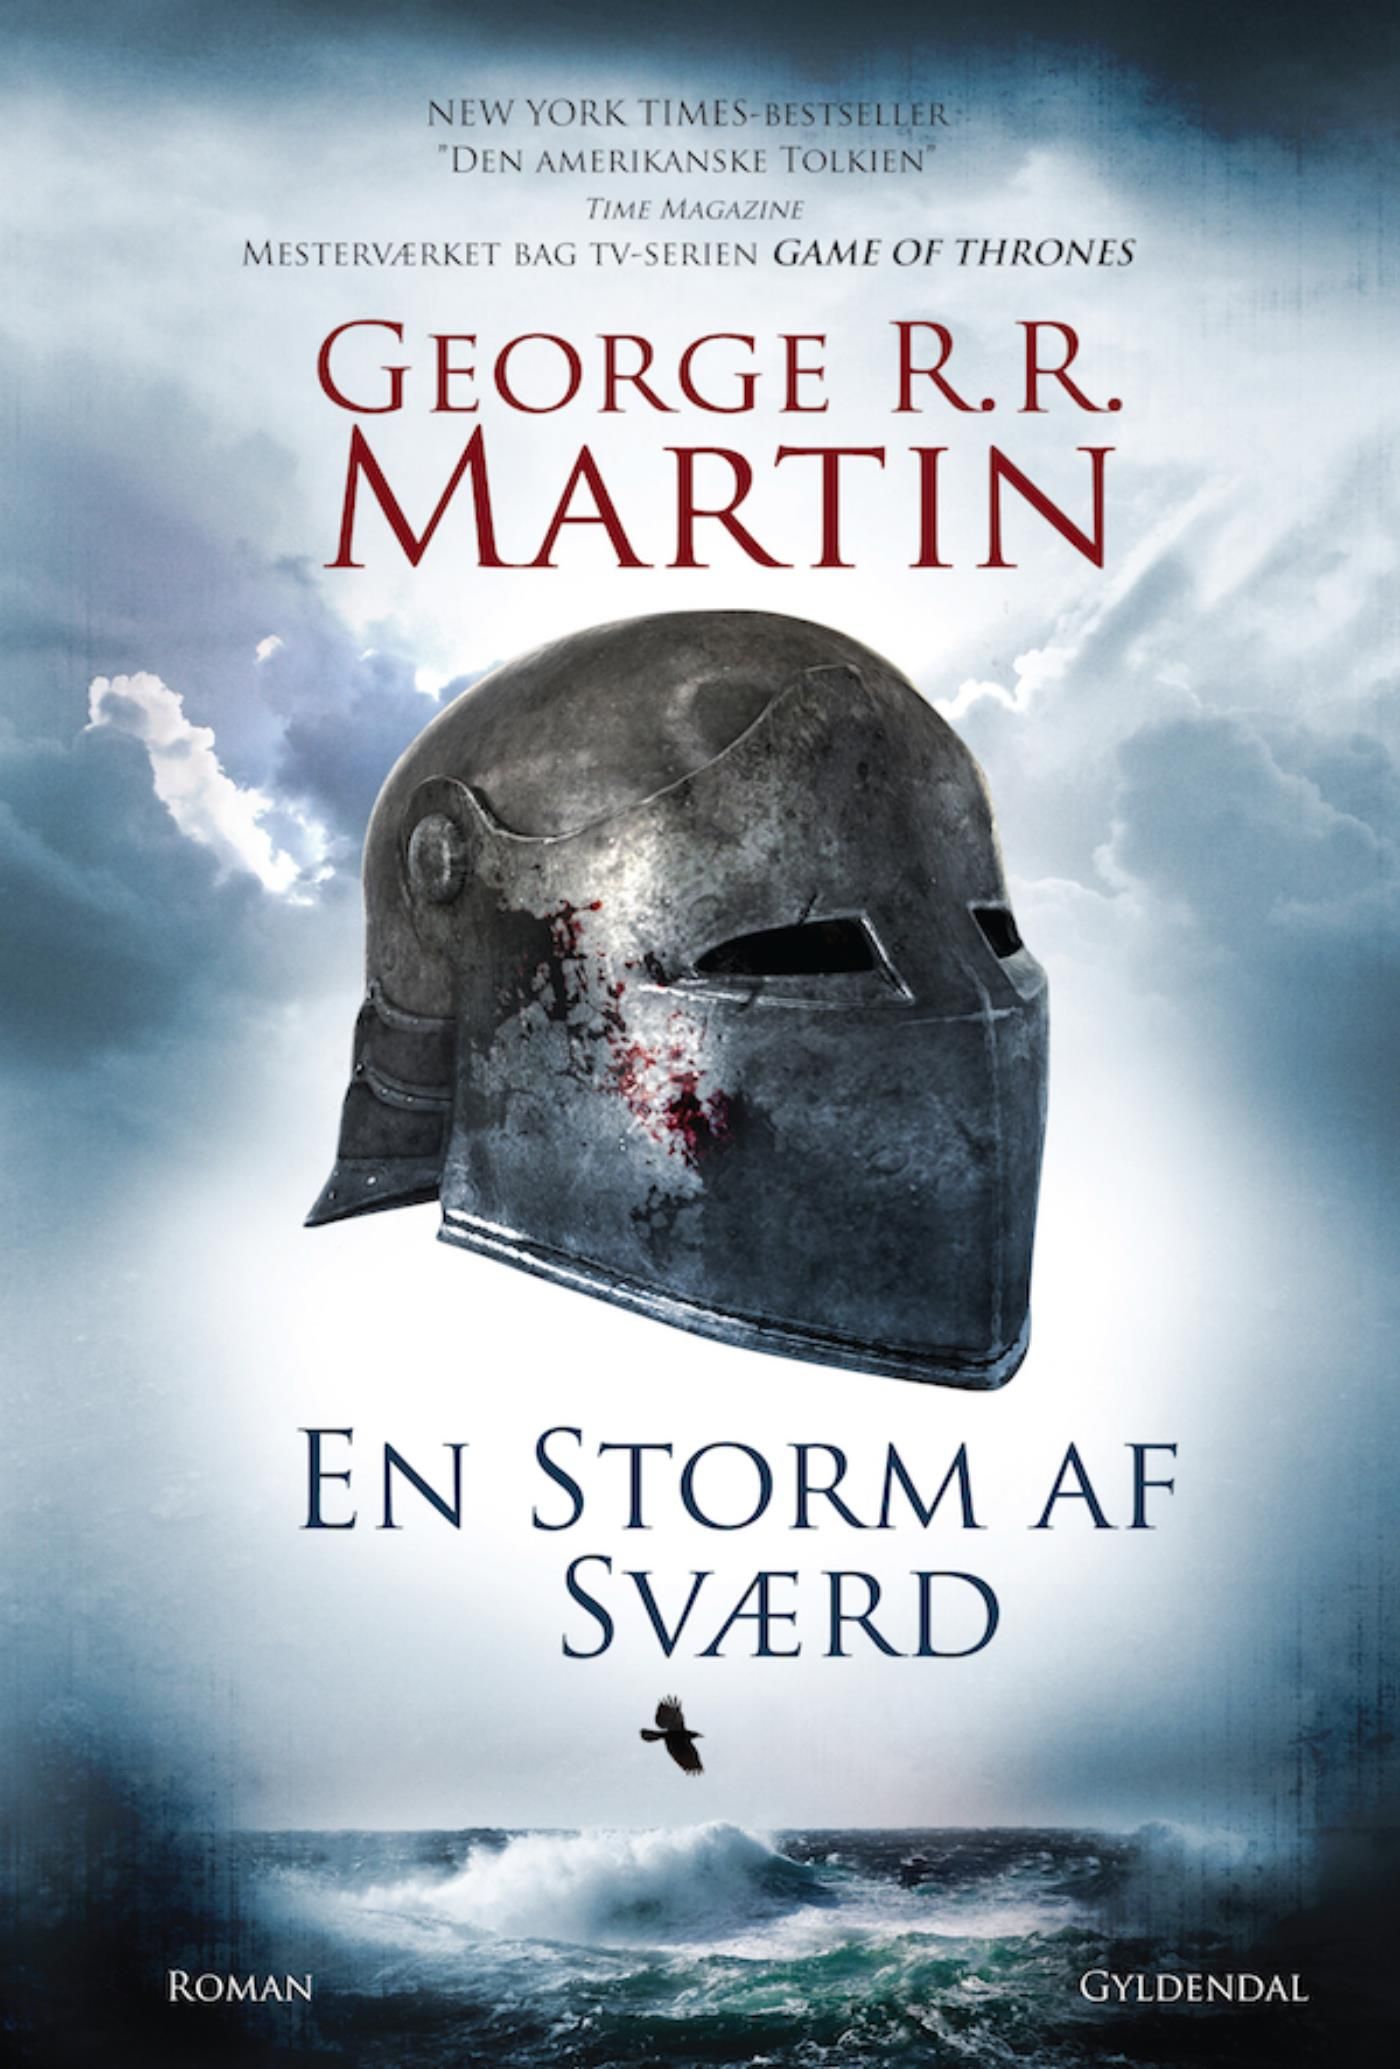 En storm af sværd, e-bok av George R. R. Martin